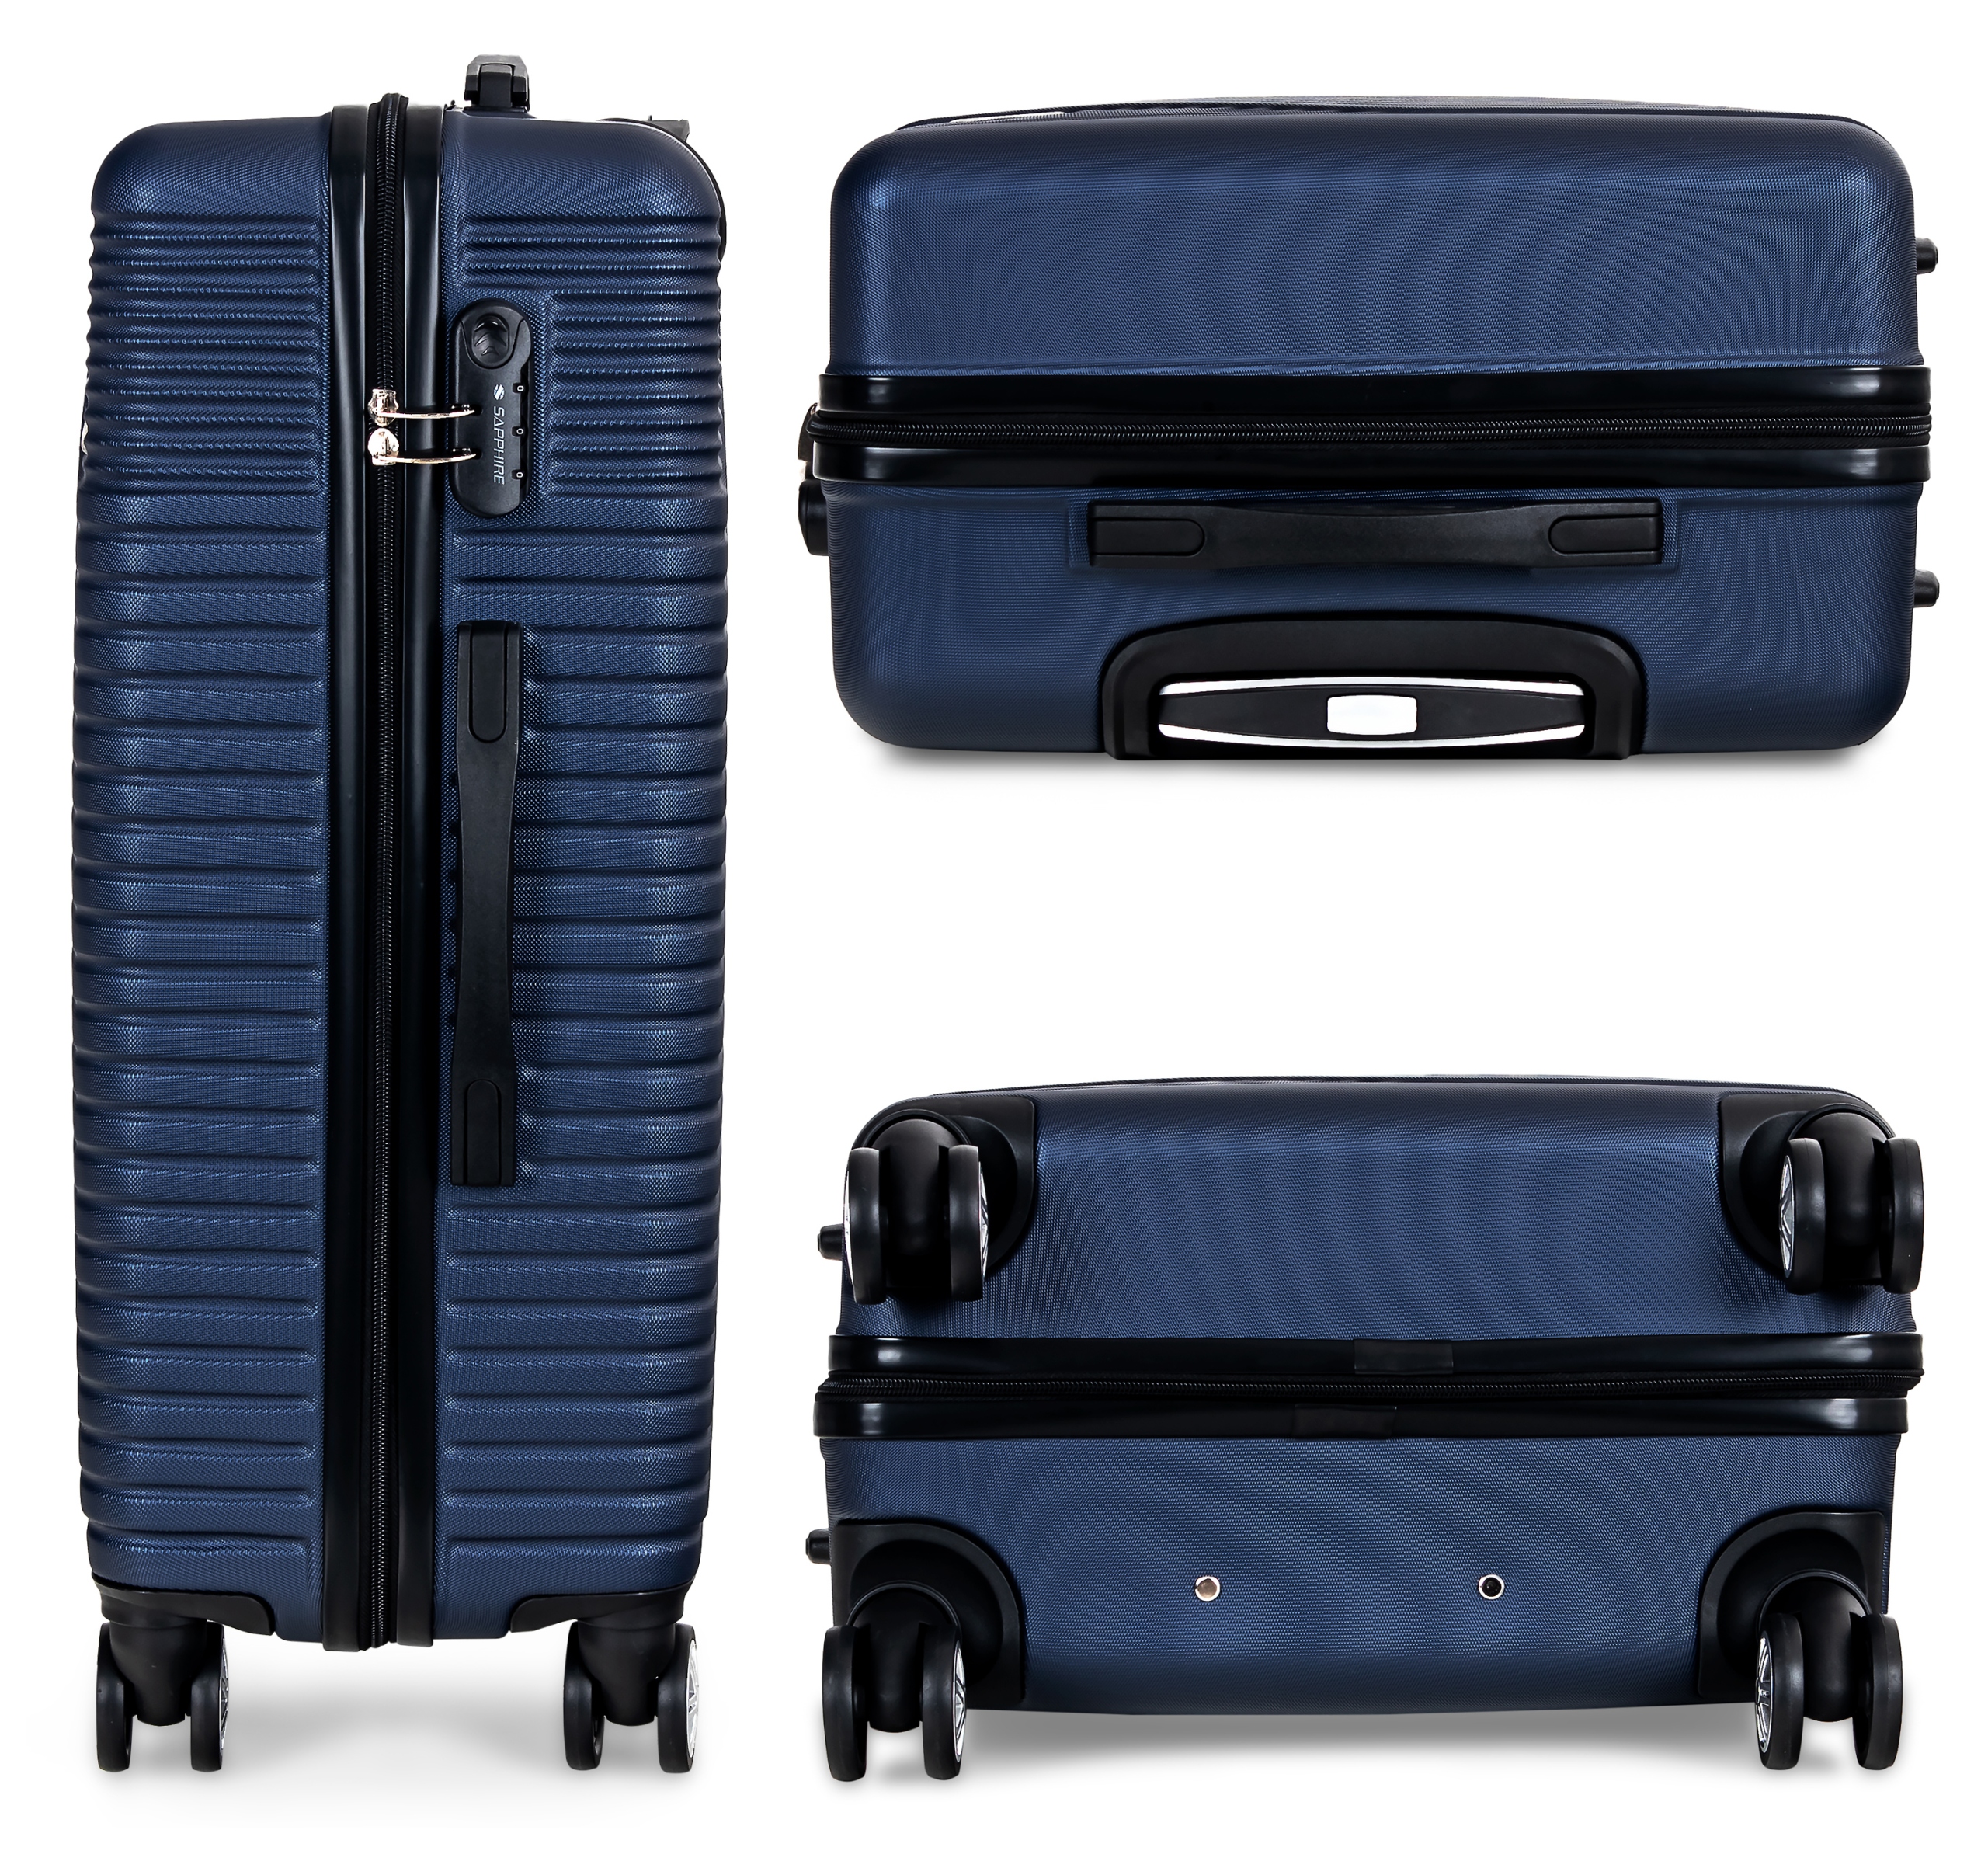 Zestaw walizek podróżnych 3w1 Sapphire ST-120